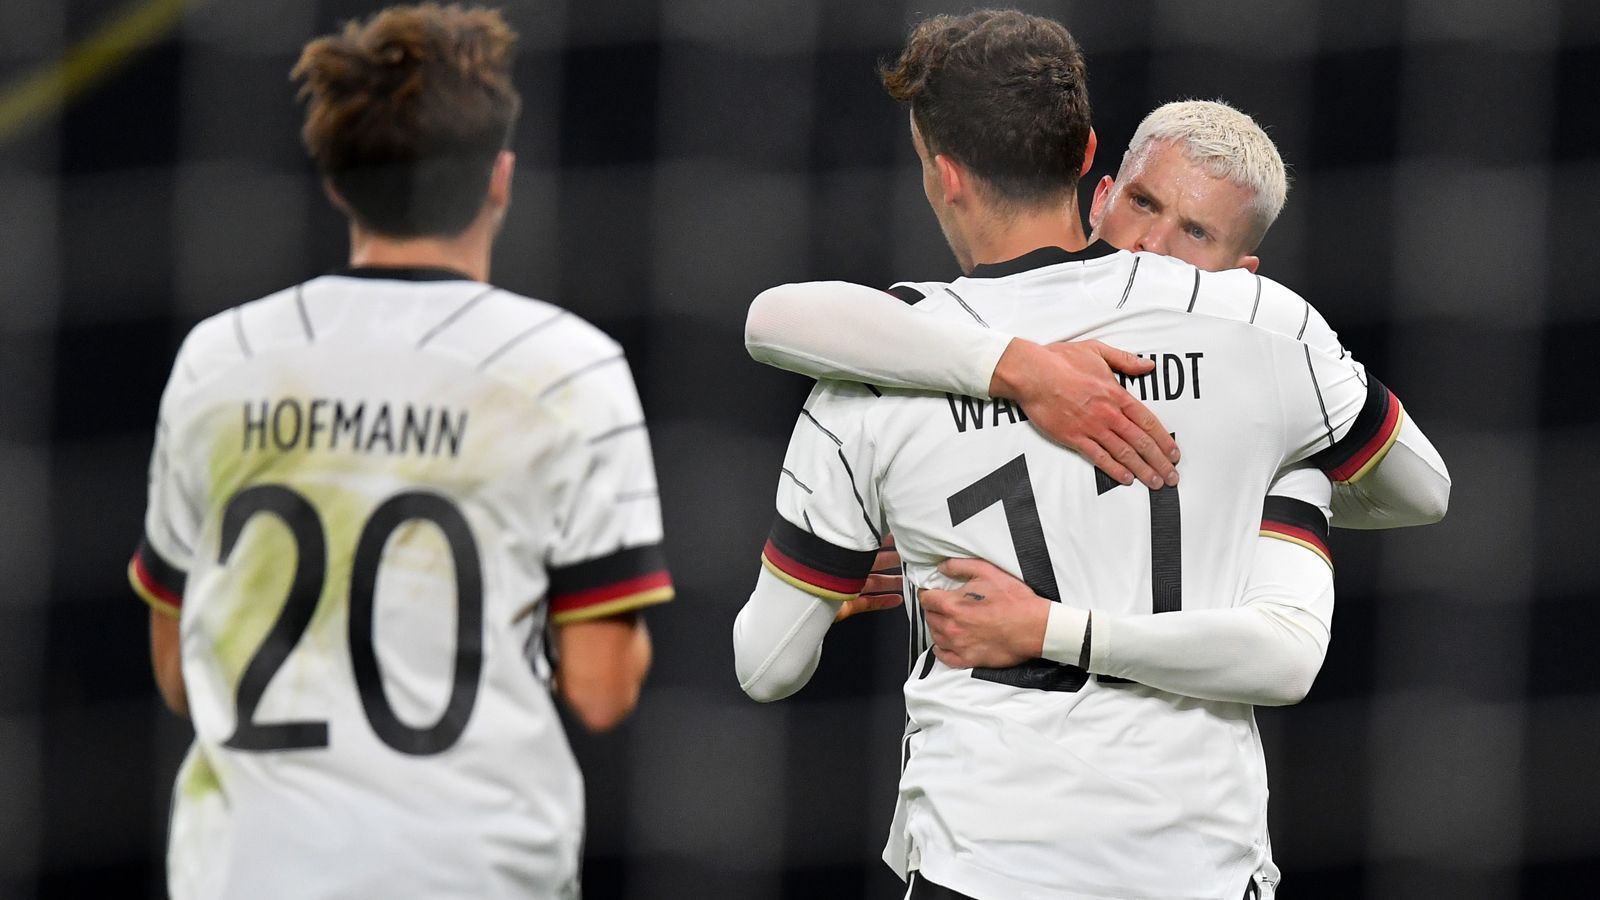 
                <strong>Das DFB-Team in der Einzelkritik</strong><br>
                Einen knappen, aber verdienten 1:0-Sieg hat das DFB-Team am Mittwochabend in Leipzig gegen Tschechien gefeiert. Wir haben die deutschen Spieler benotet.
              